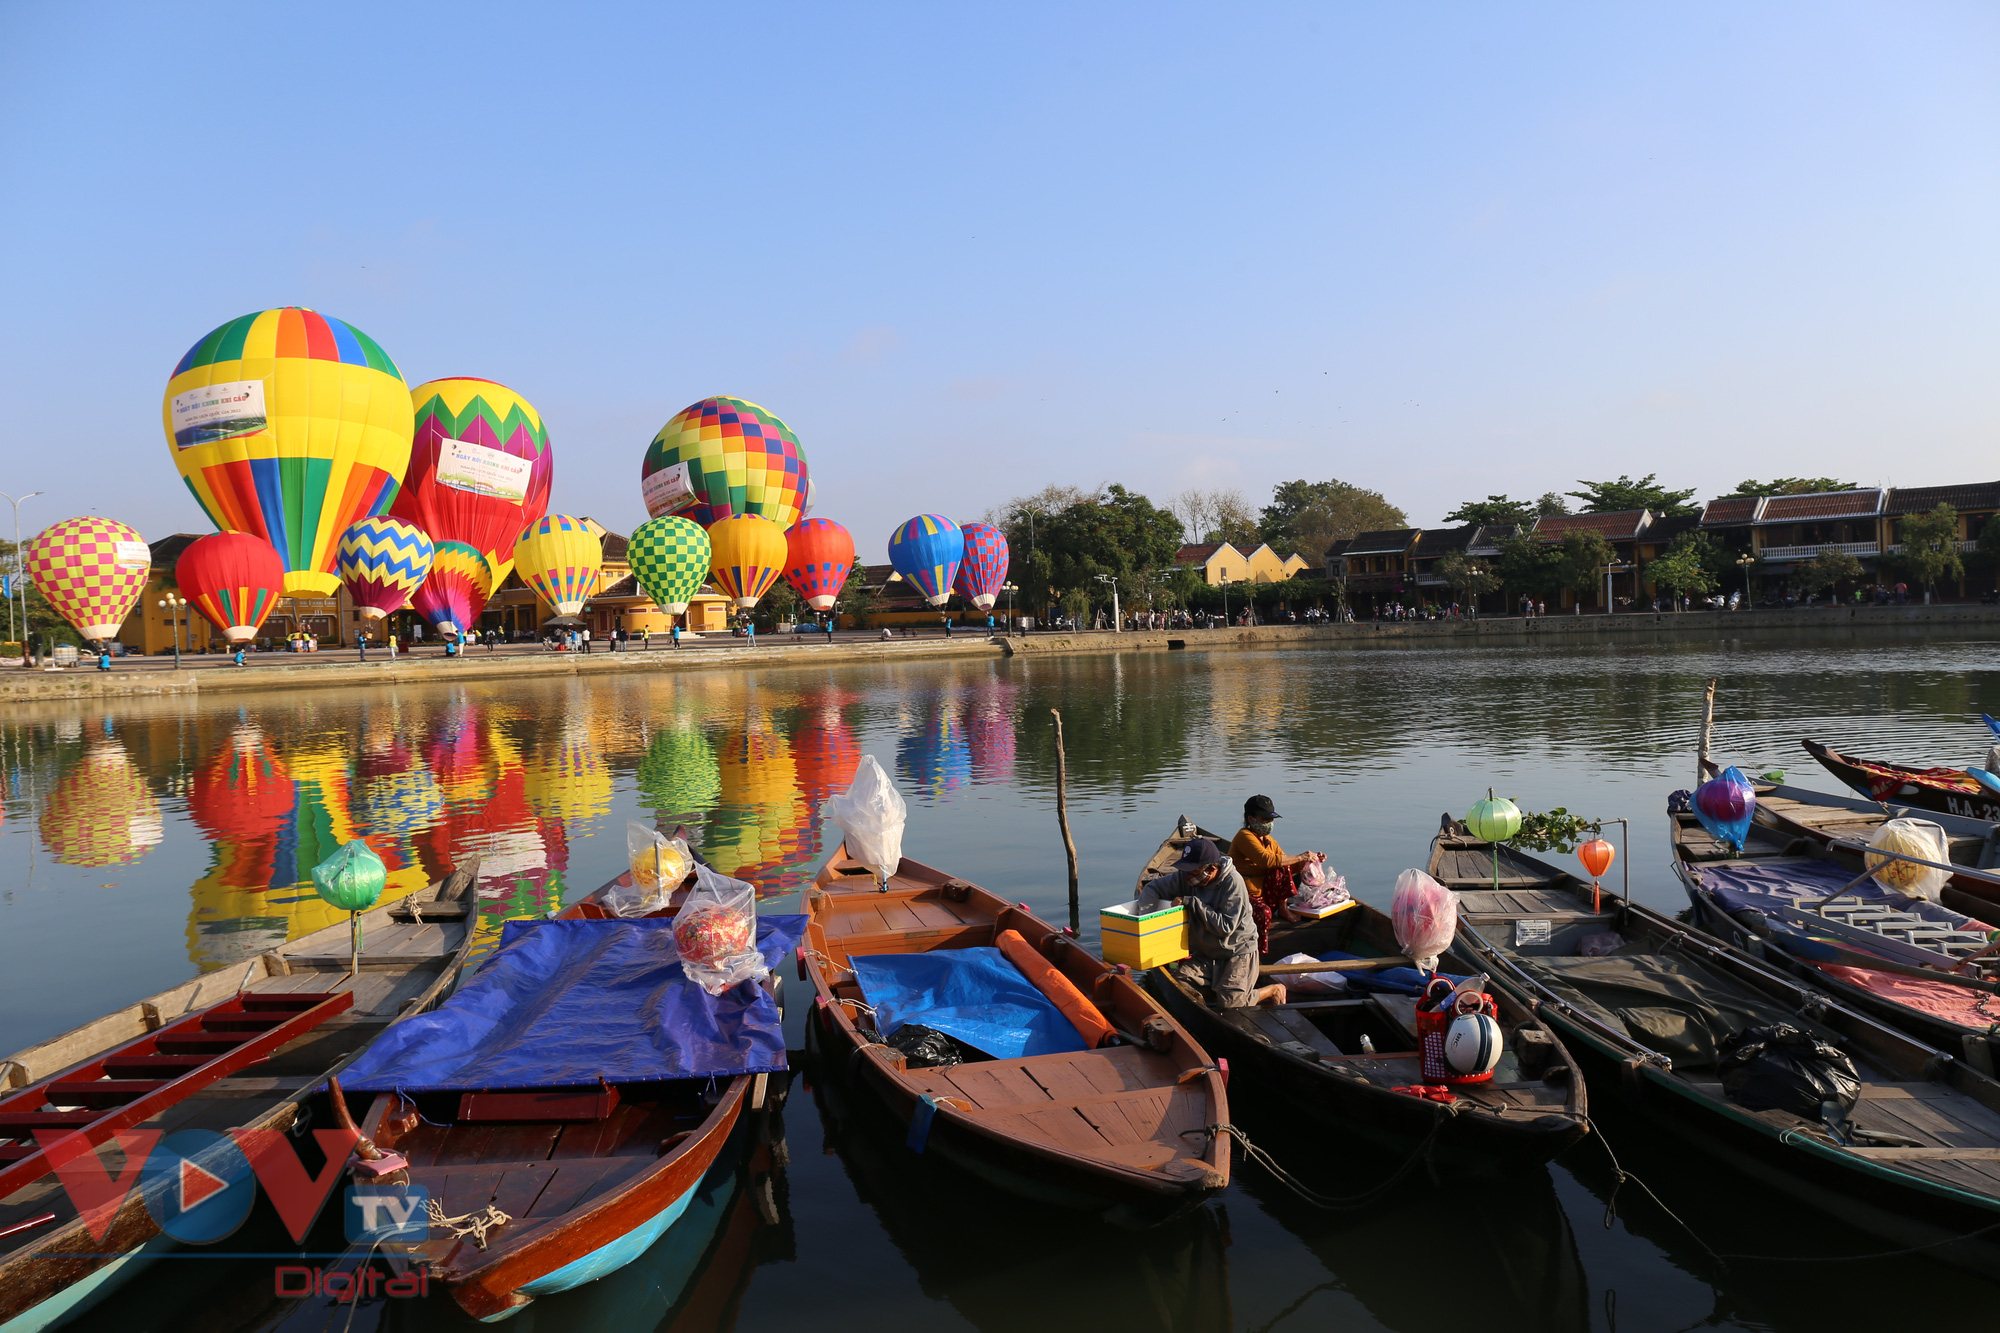 Rực rỡ sắc màu Ngày hội khinh khí cầu bên sông Hoài, phố cổ Hội An - Ảnh 2.